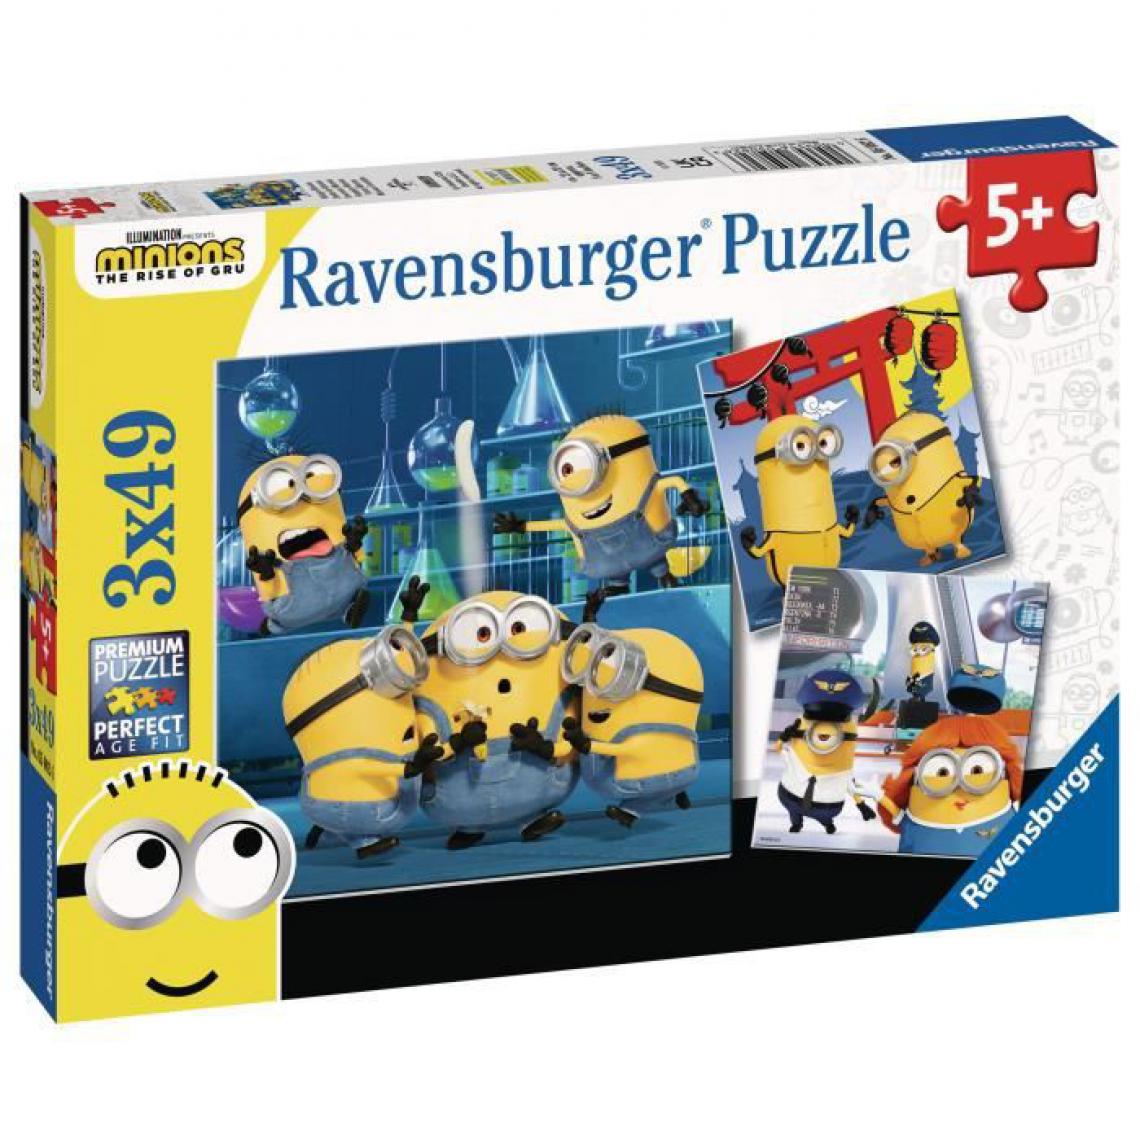 Ravensburger - LES MINIONS 2 Puzzles 3x49 pieces - Drôles de Minions - Ravensburger - Lot de puzzles enfant - Des 5 ans - Animaux